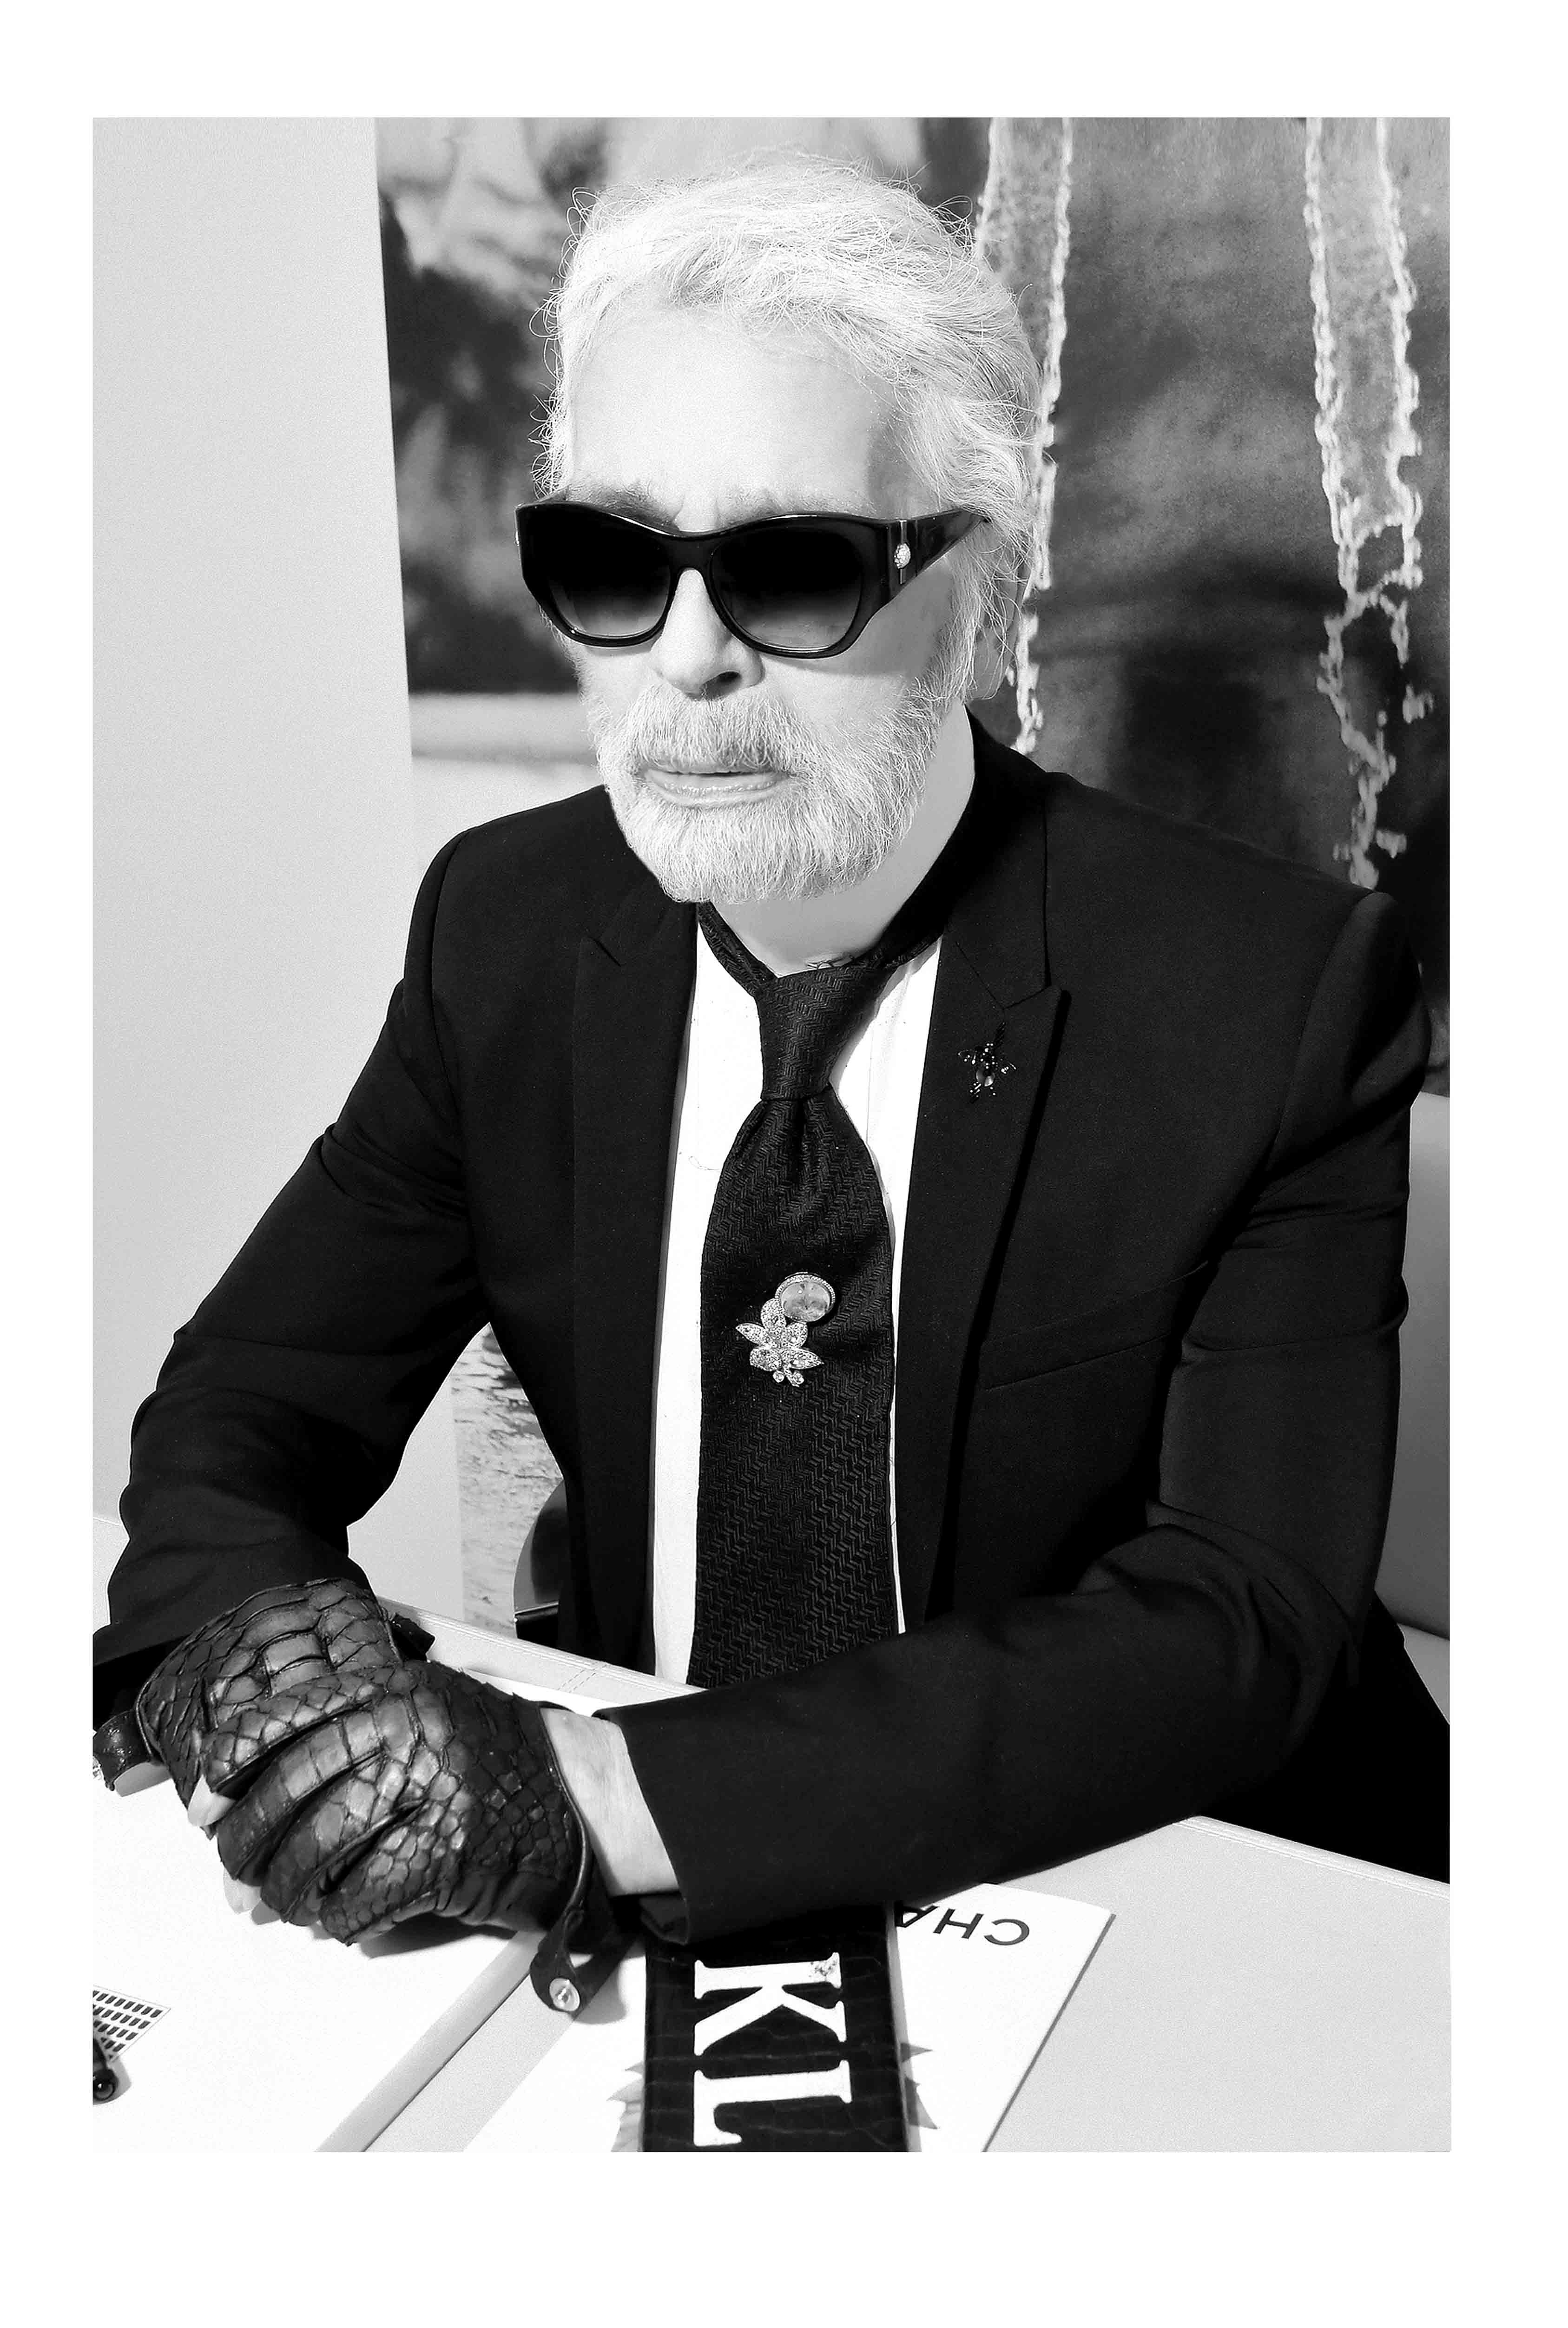 Karl Lagerfeld par Stéphane Feugère.